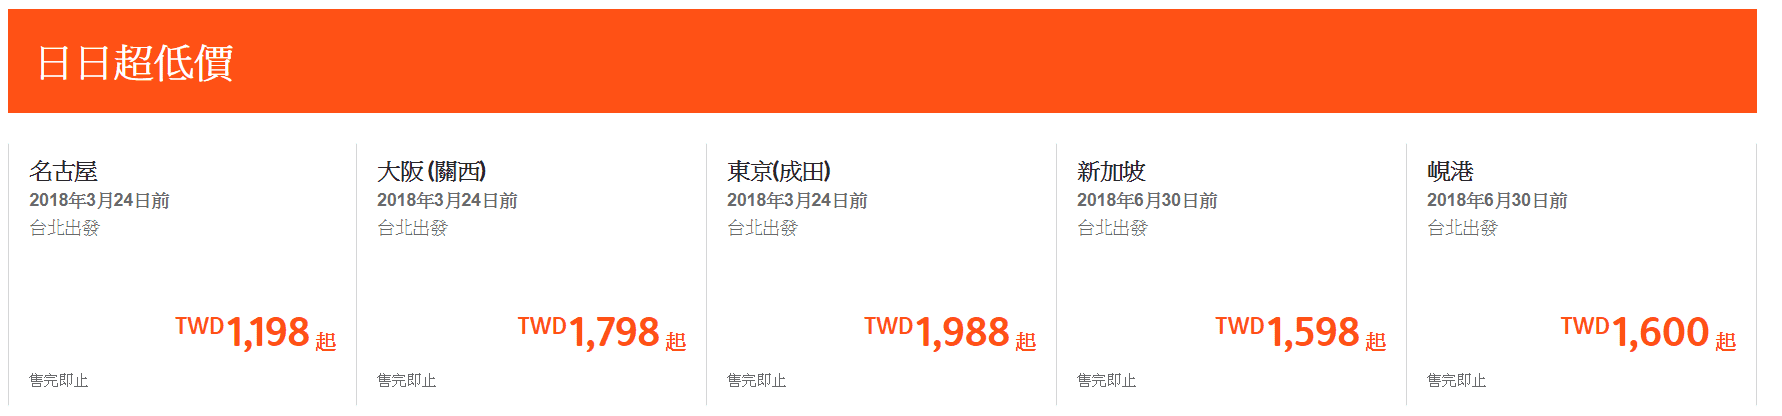 捷星特價，3月前、5月整個月，峴港、大阪、名古屋都在特價～買好來回只要5K不到～特價趁現在～